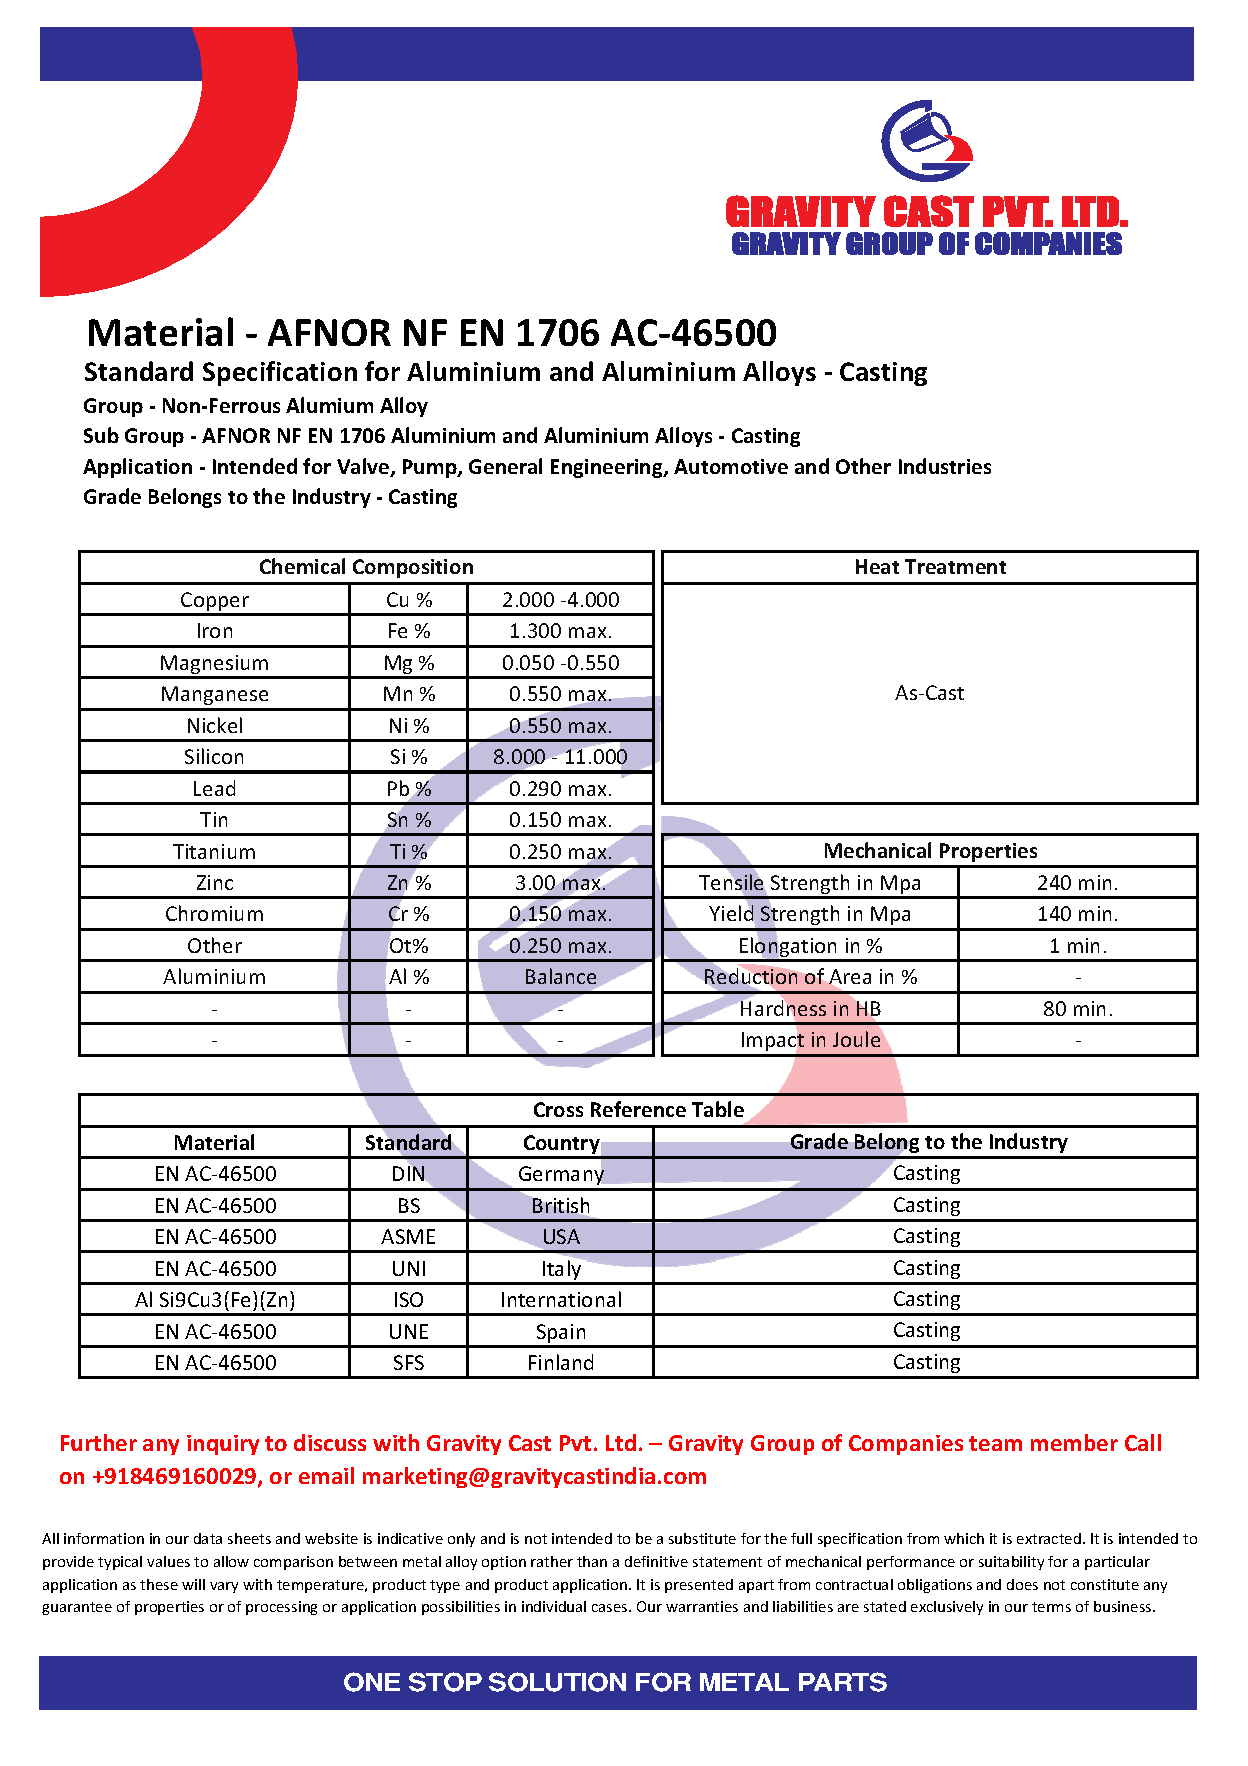 AFNOR NF EN 1706 AC-46500.pdf